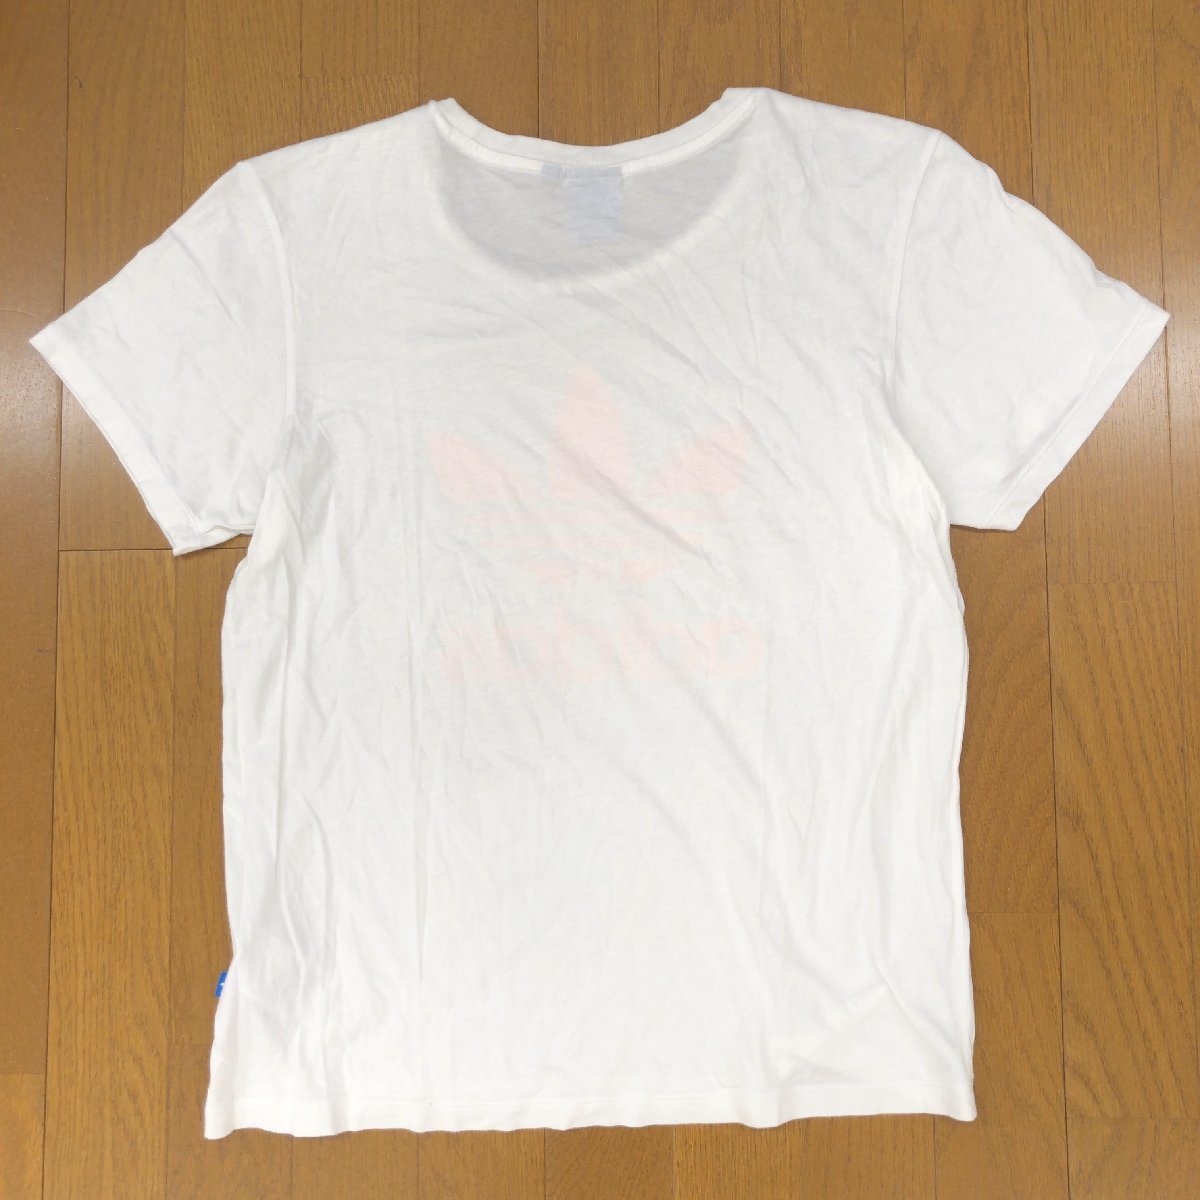 adidas originals アディダスオリジナルス ビッグロゴプリント Tシャツ L 白 ホワイト 半袖 カットソー 国内正規品 レディース 女性用_画像2